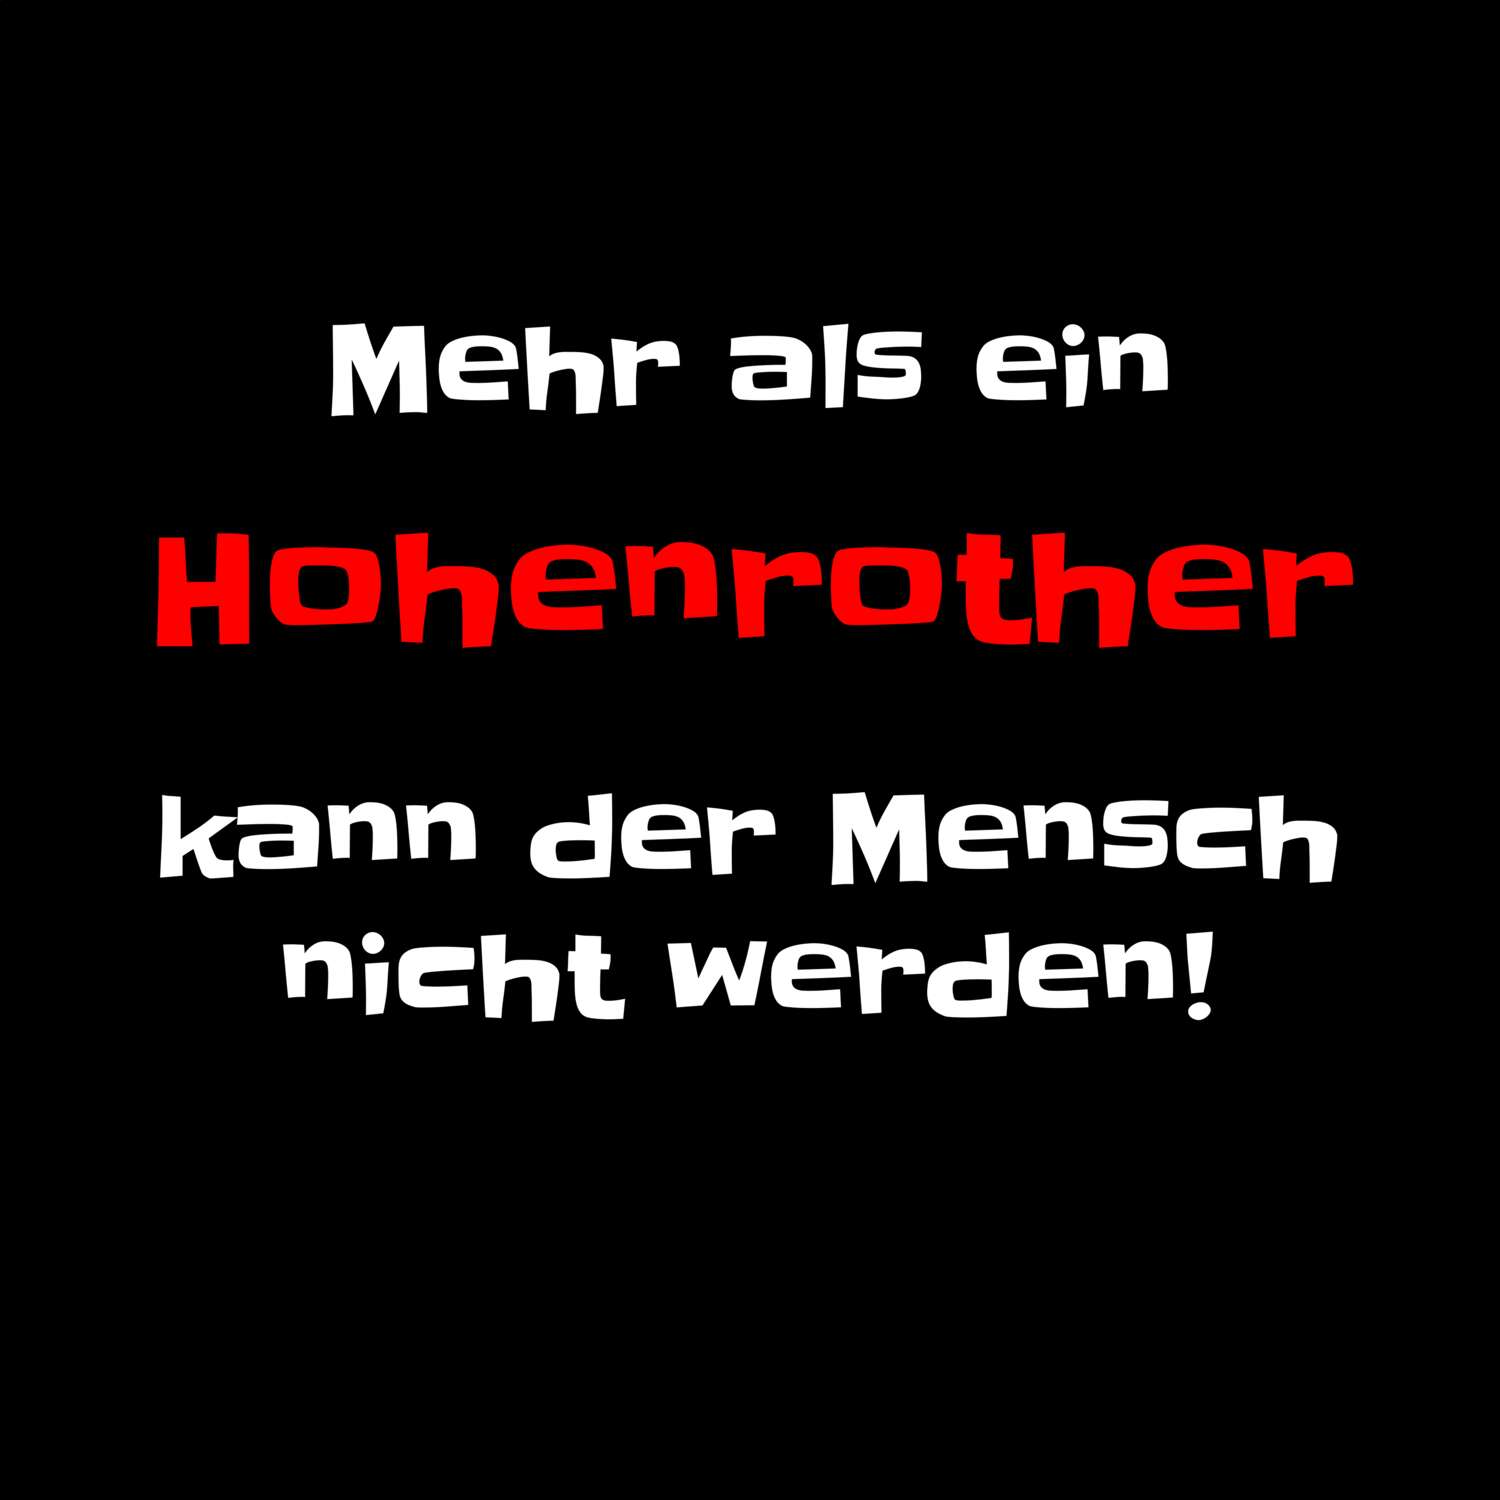 Hohenroth T-Shirt »Mehr als ein«